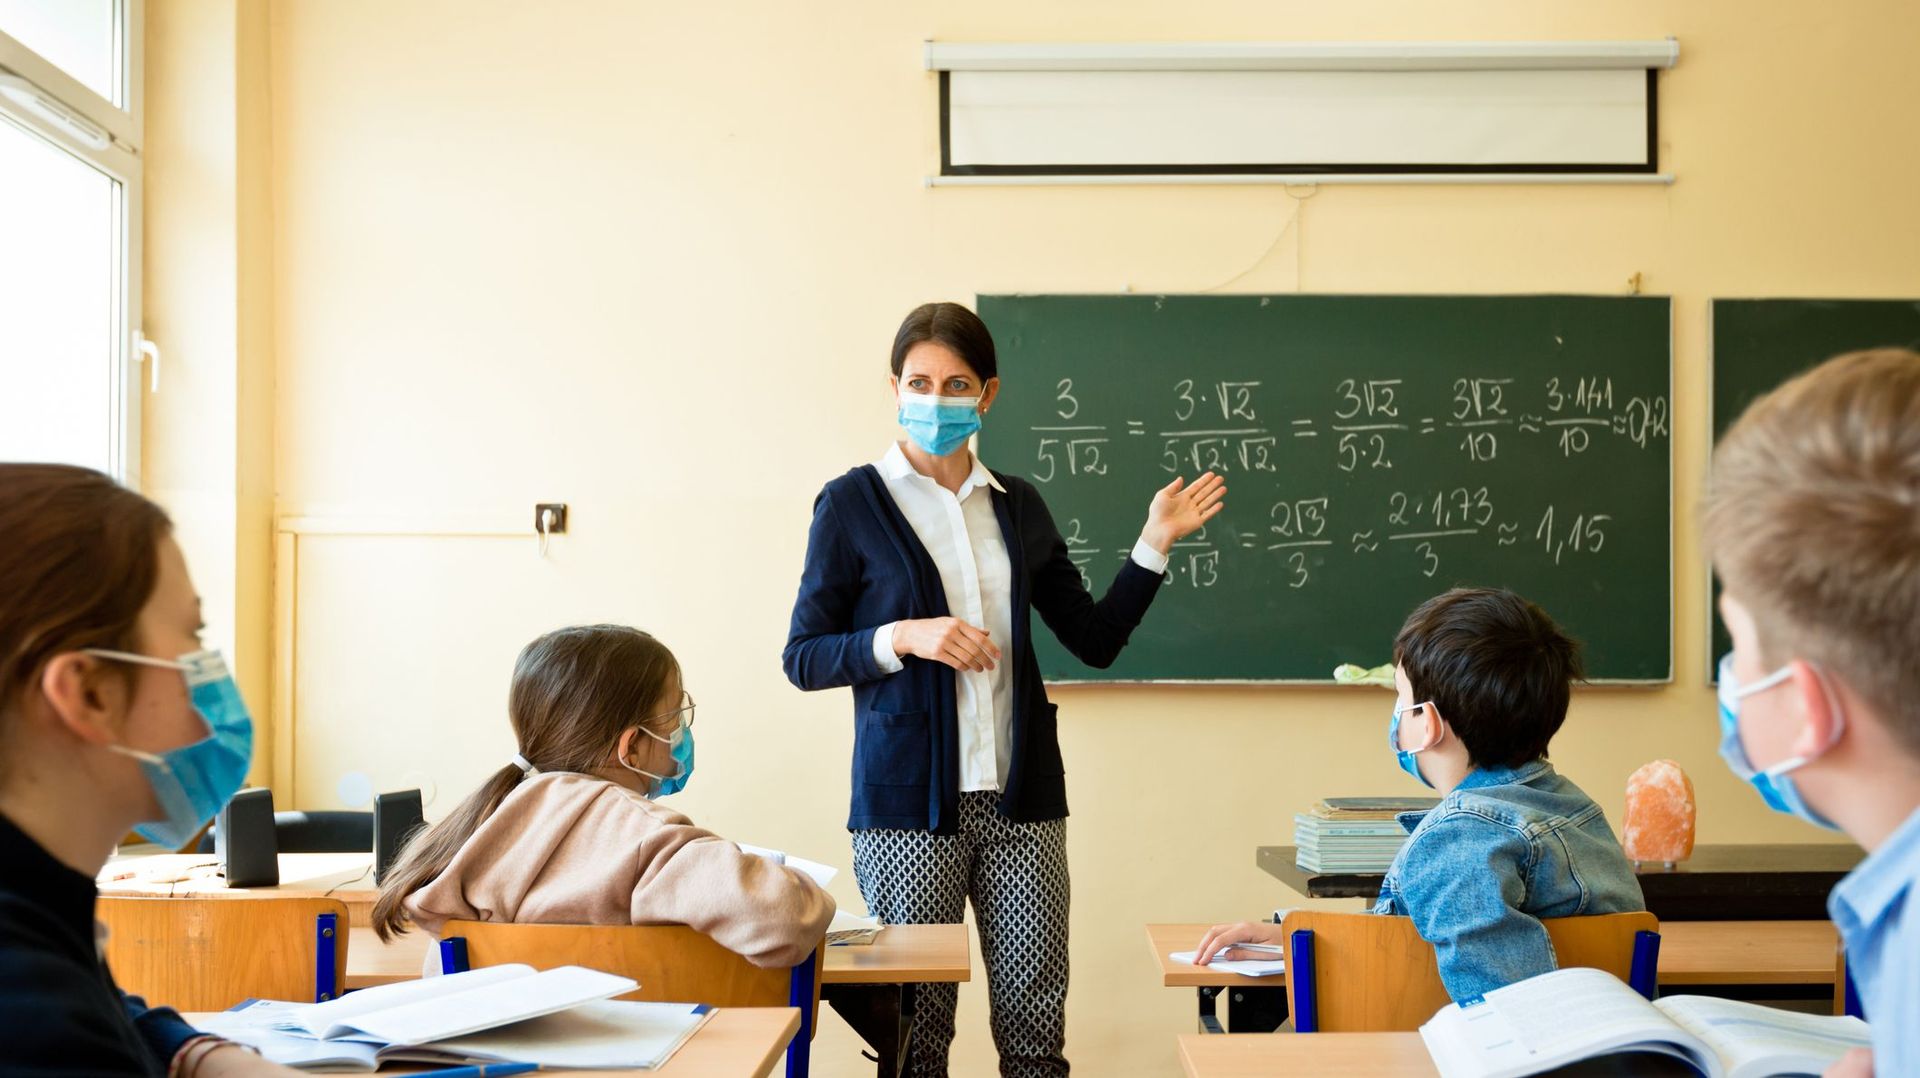 Pour les enseignants, le port du masque en permanence pourrait être dangereux 